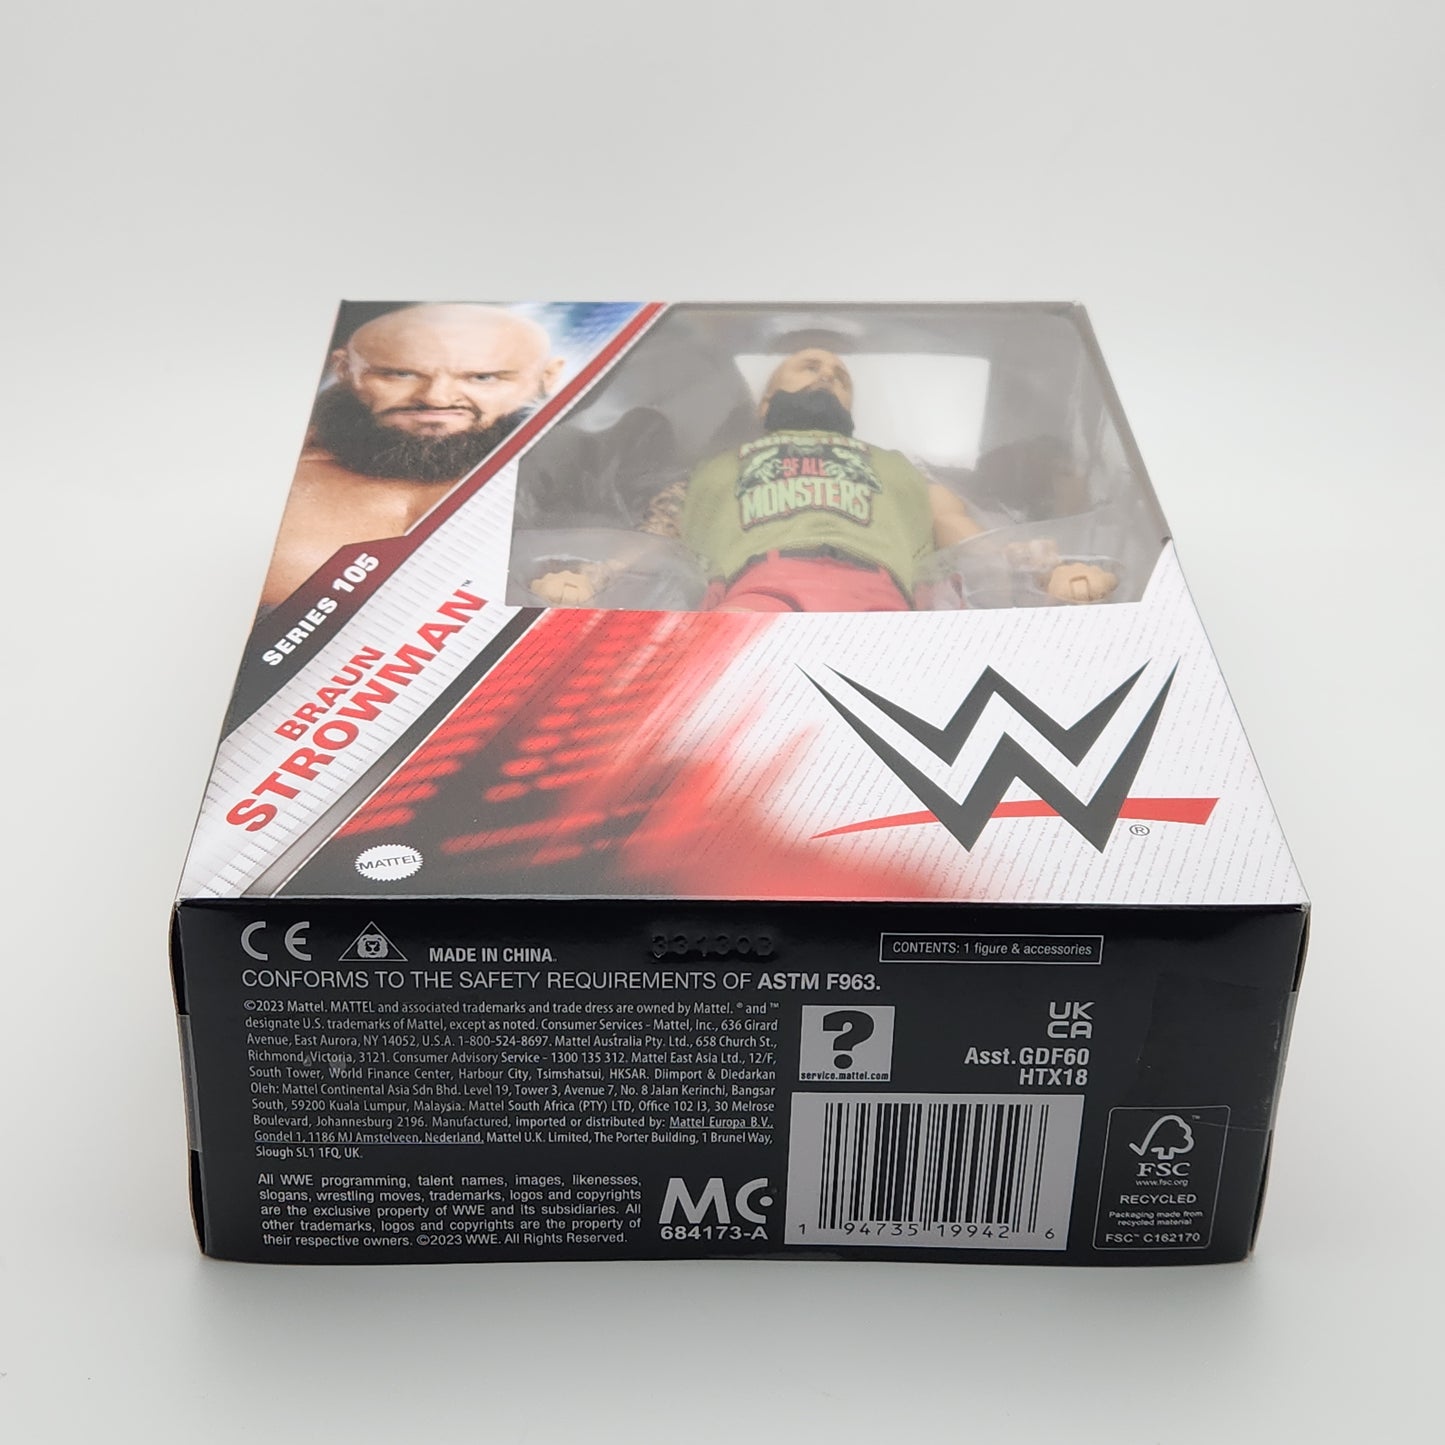 WWE Elite Collection Series- Braun Strowman